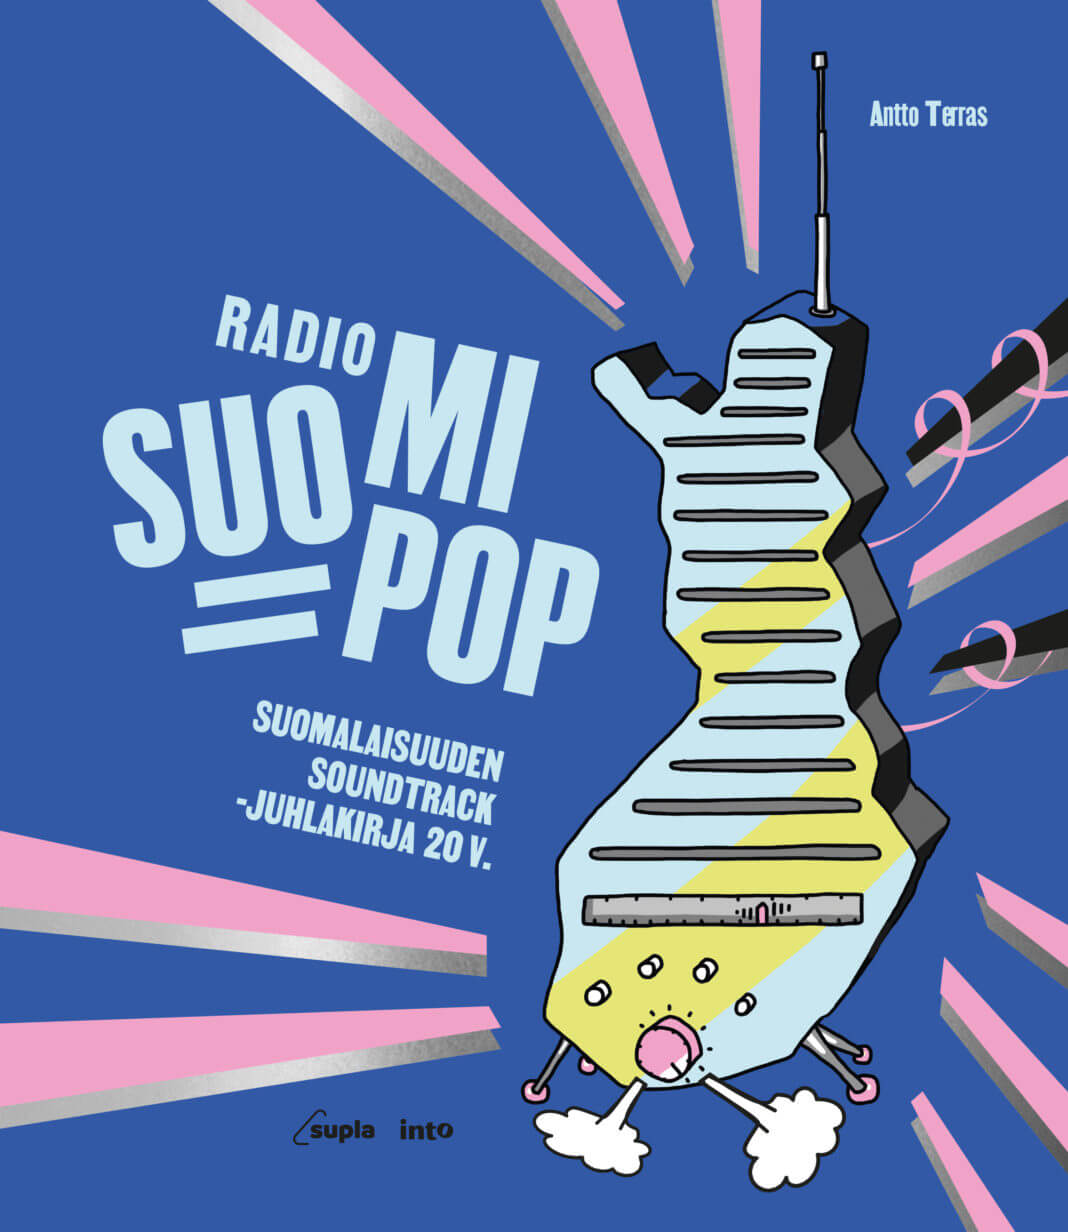 Radio Suomi Popin juhlakirja